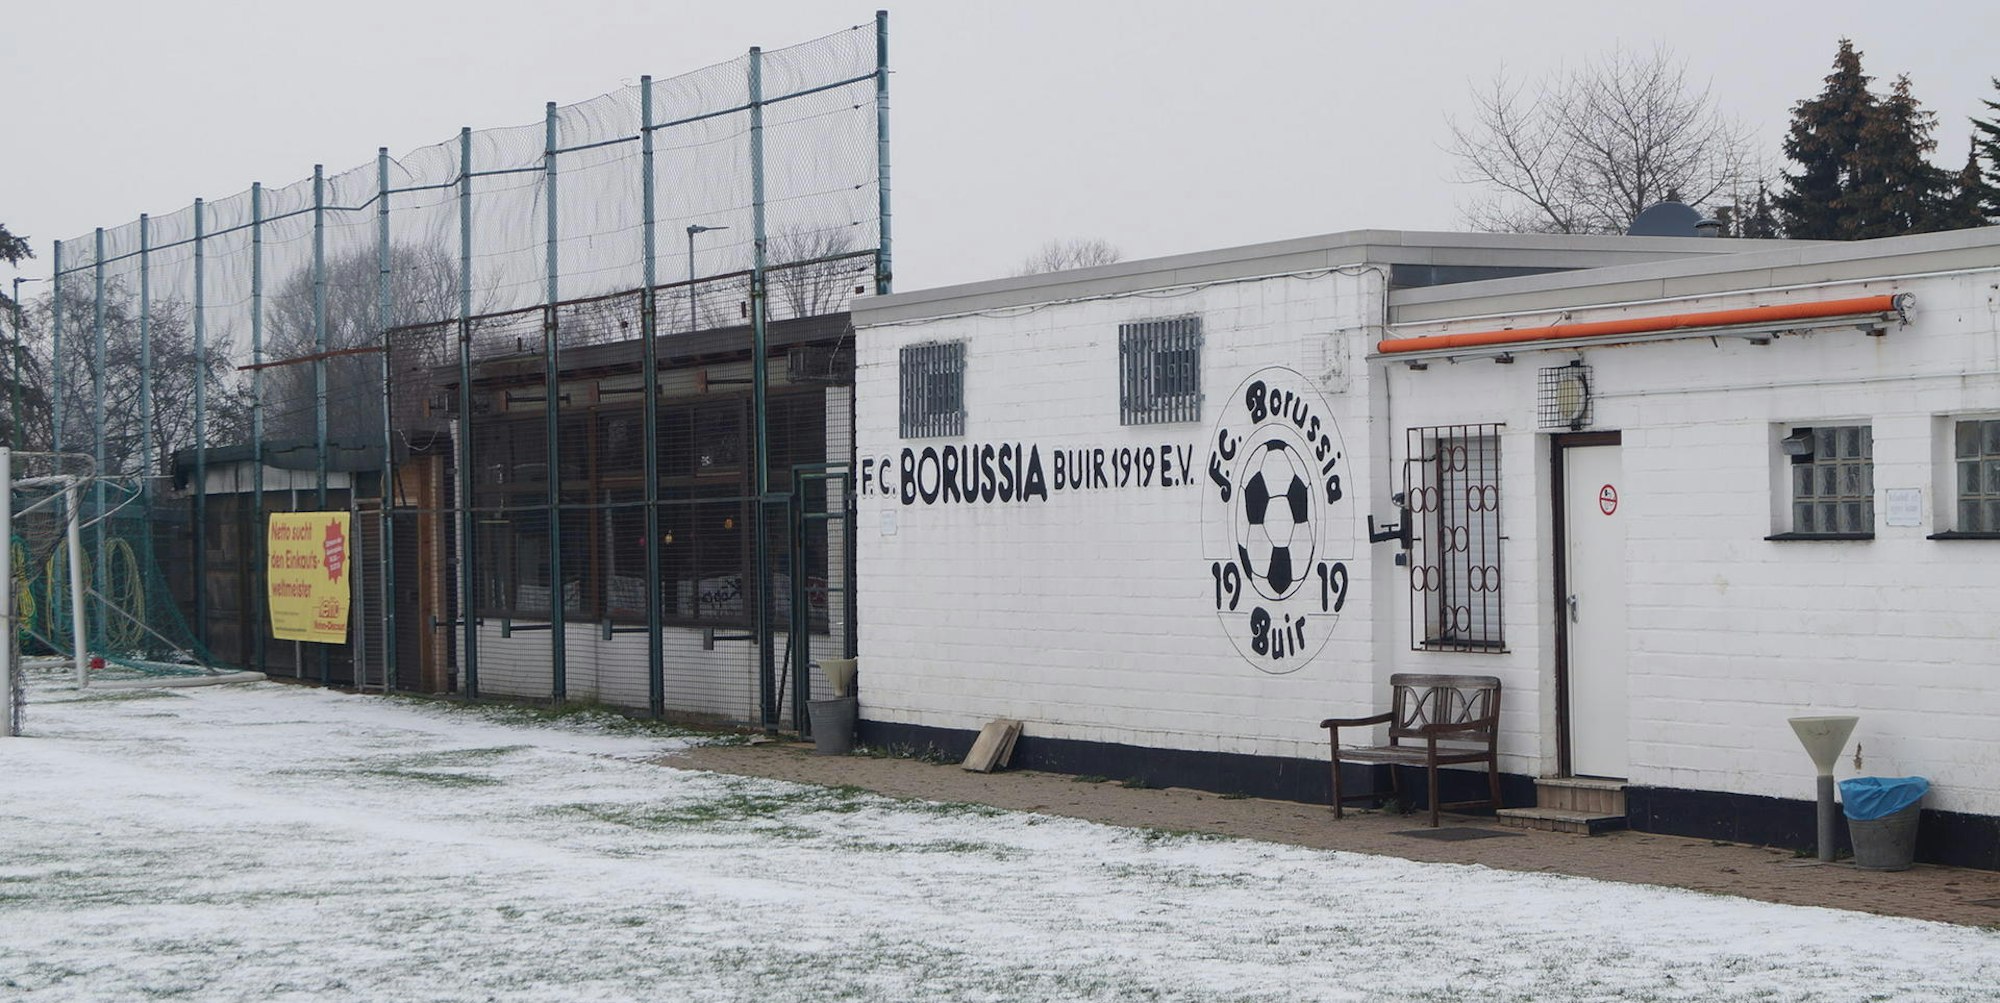 Borussia Buir bekommt einen Kunstrasenplatz, die Leichtathleten vom TUS hätten gerne eine Tartanbahn in Buir.